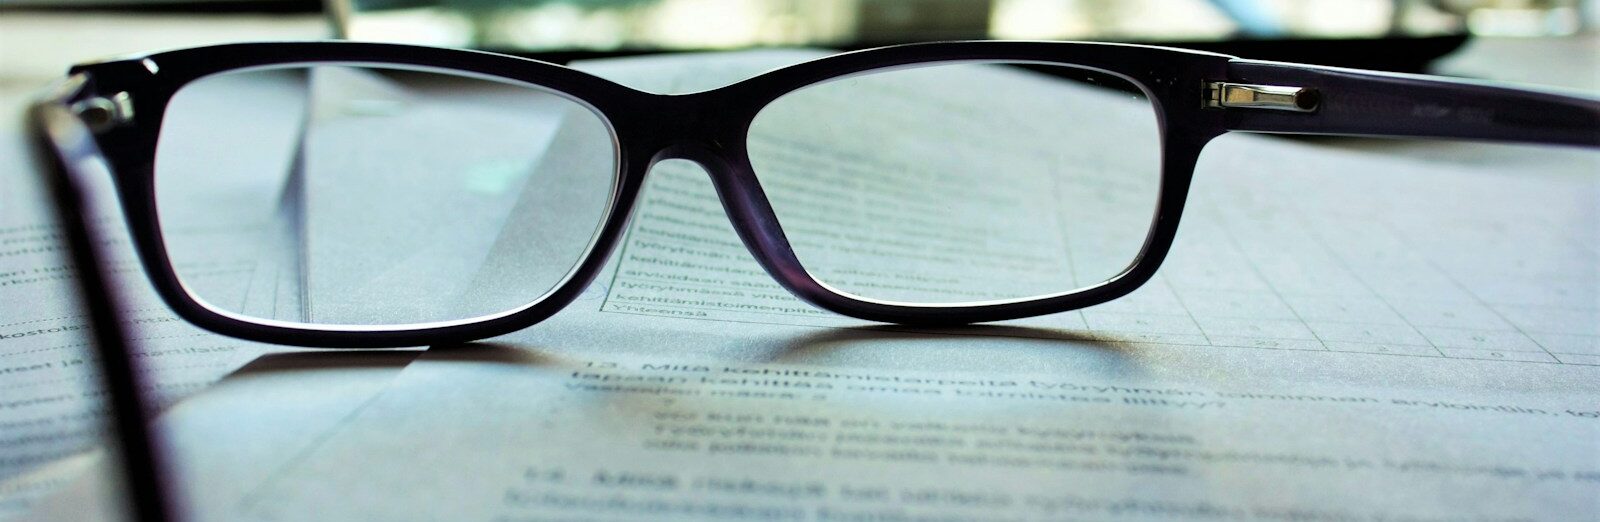 black-framed eyeglasses on white printing paper